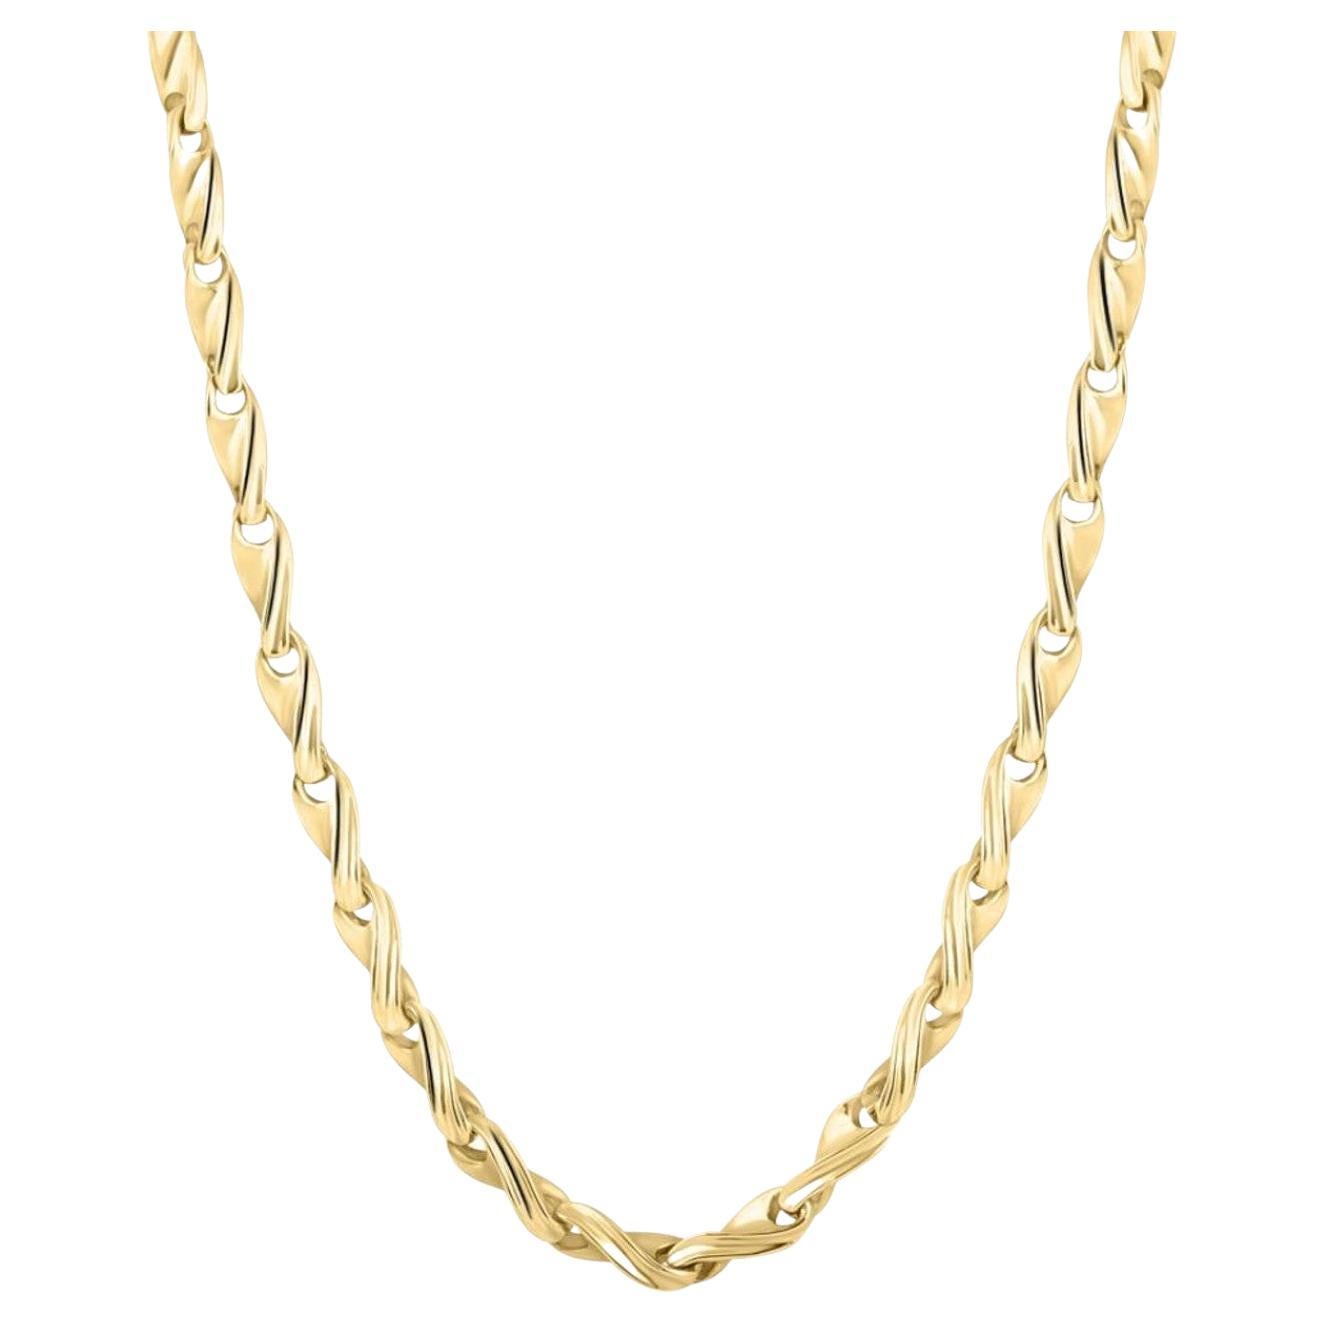 Braccio Solid 14k Yellow Gold Men's Chain Necklace 50.9 Grams